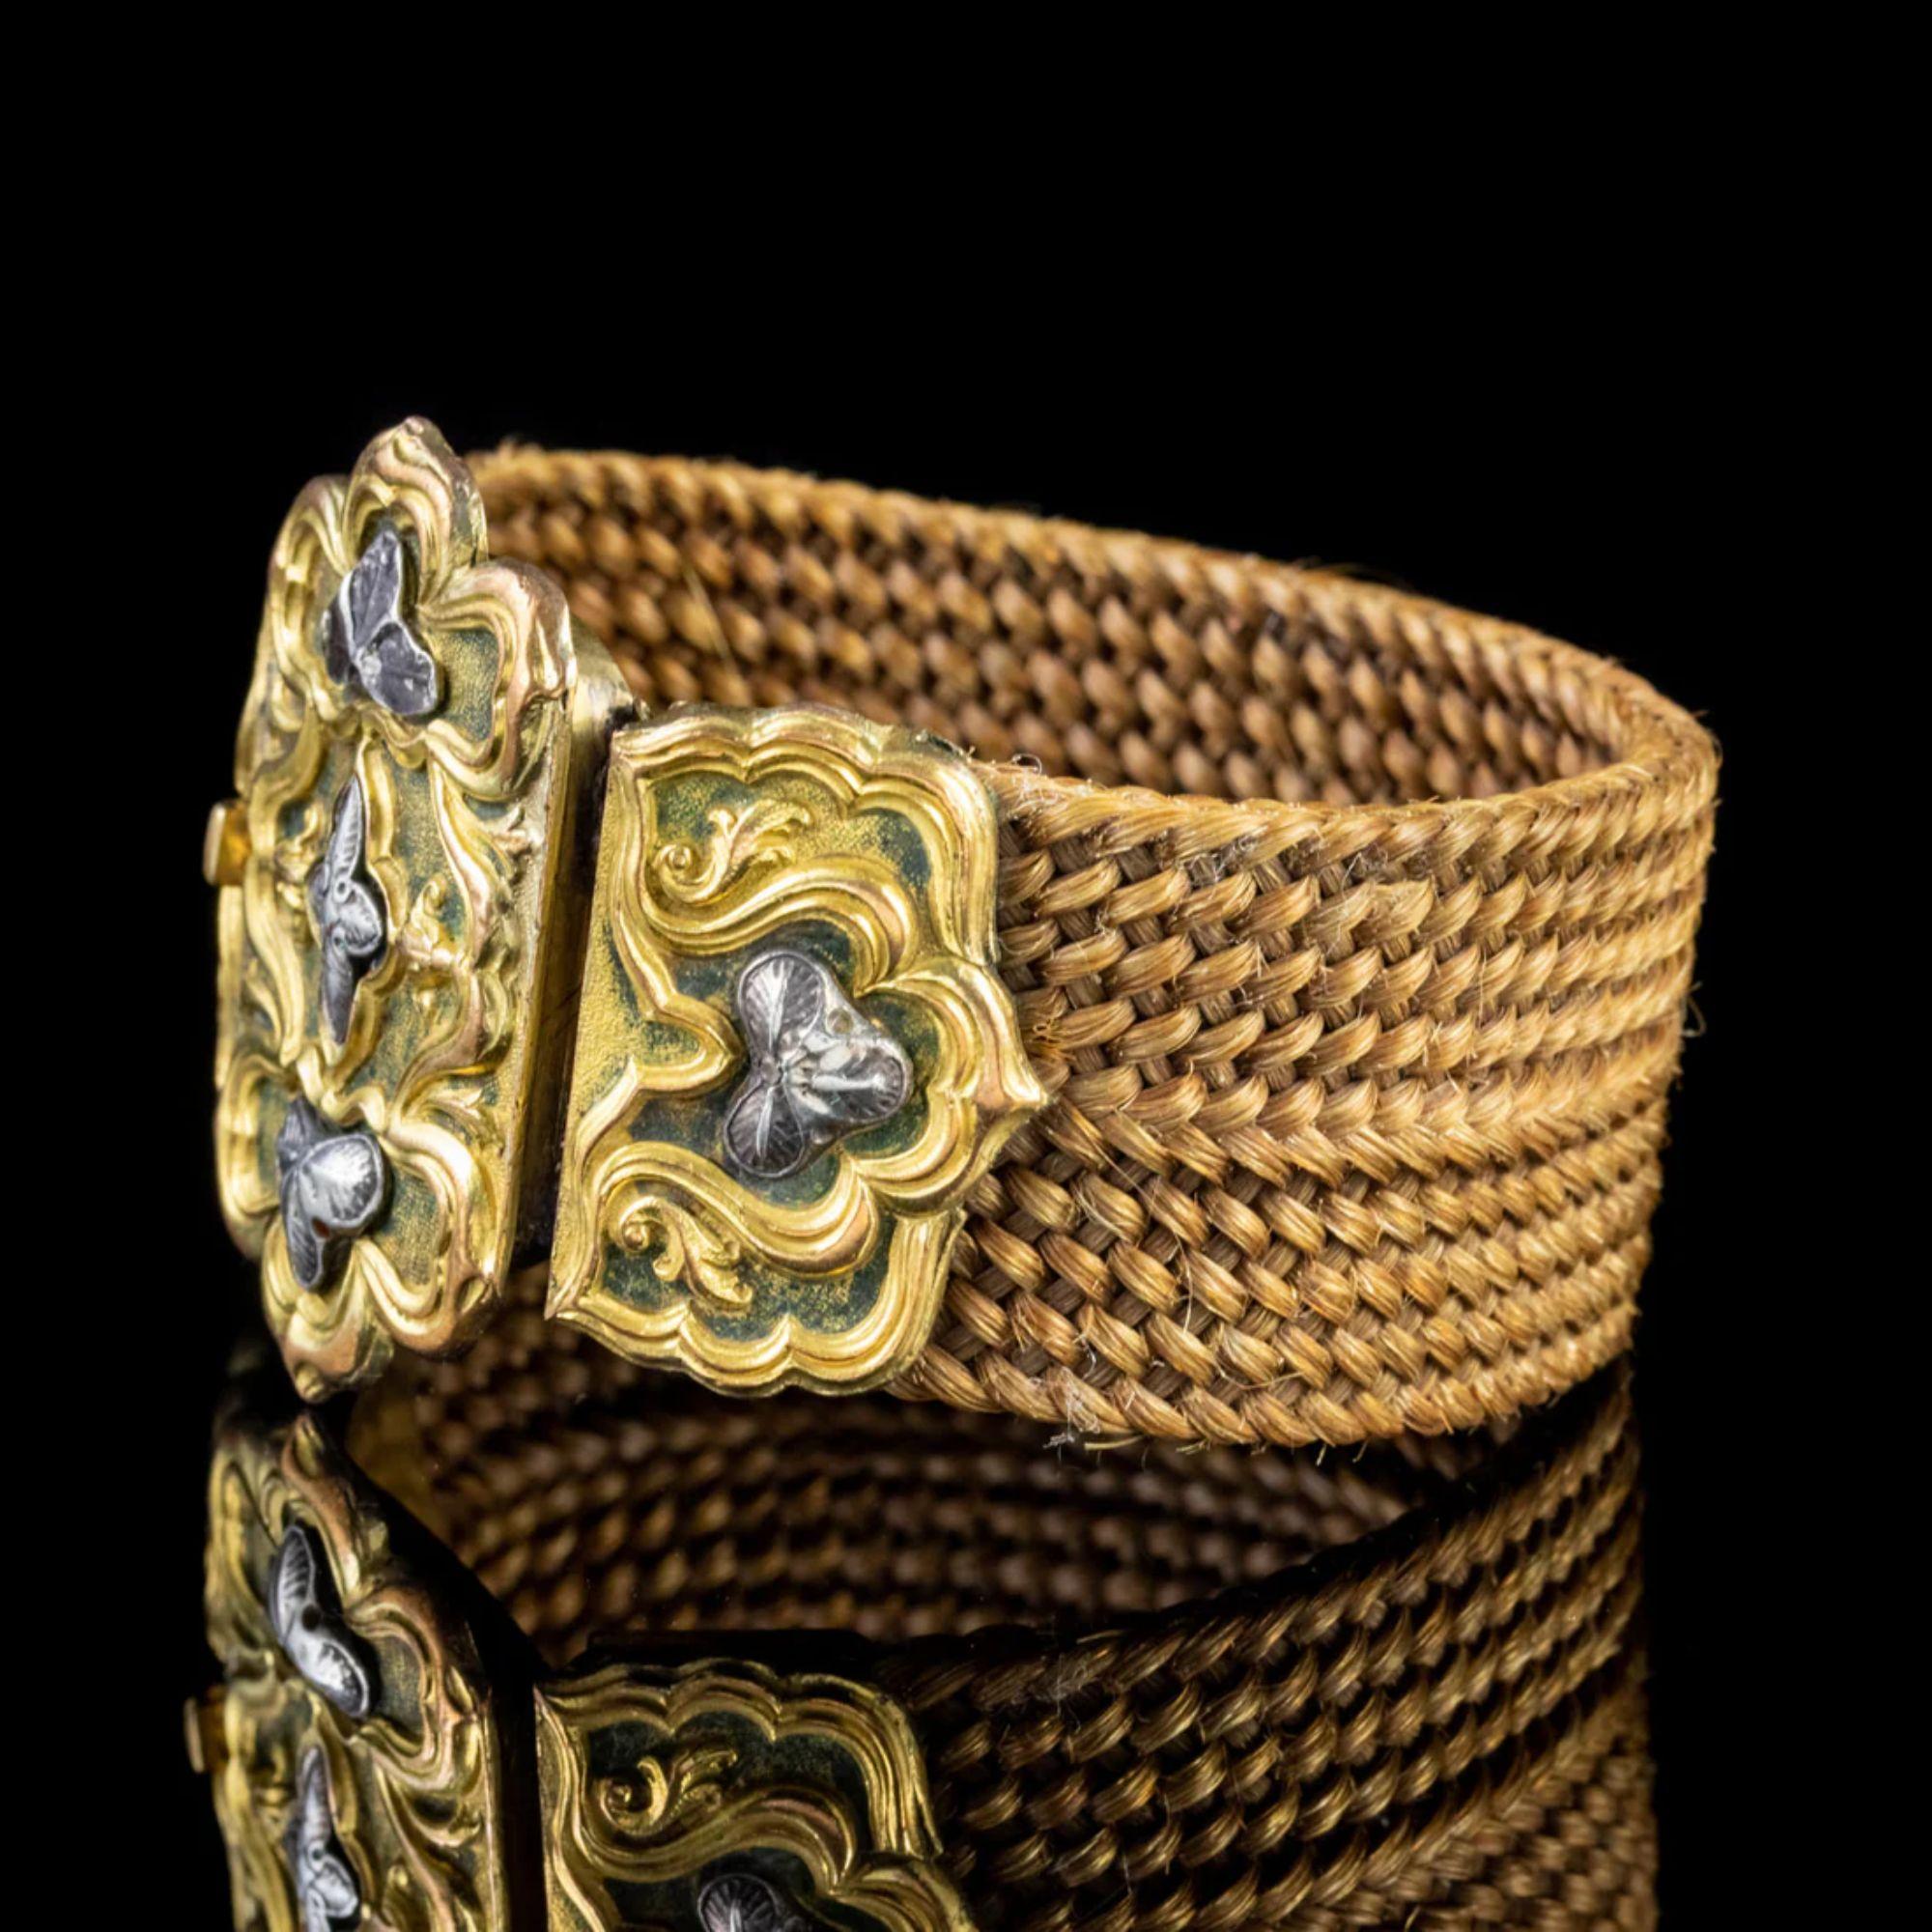 Ein großartiges antikes georgianisches Armband aus dem frühen 19. Jahrhundert, bestehend aus einem dicken Band aus geflochtenem Haar, das dicht gewoben ist und einen schönen goldbraunen Farbton hat.

Das Band ist an einer großen, verzierten